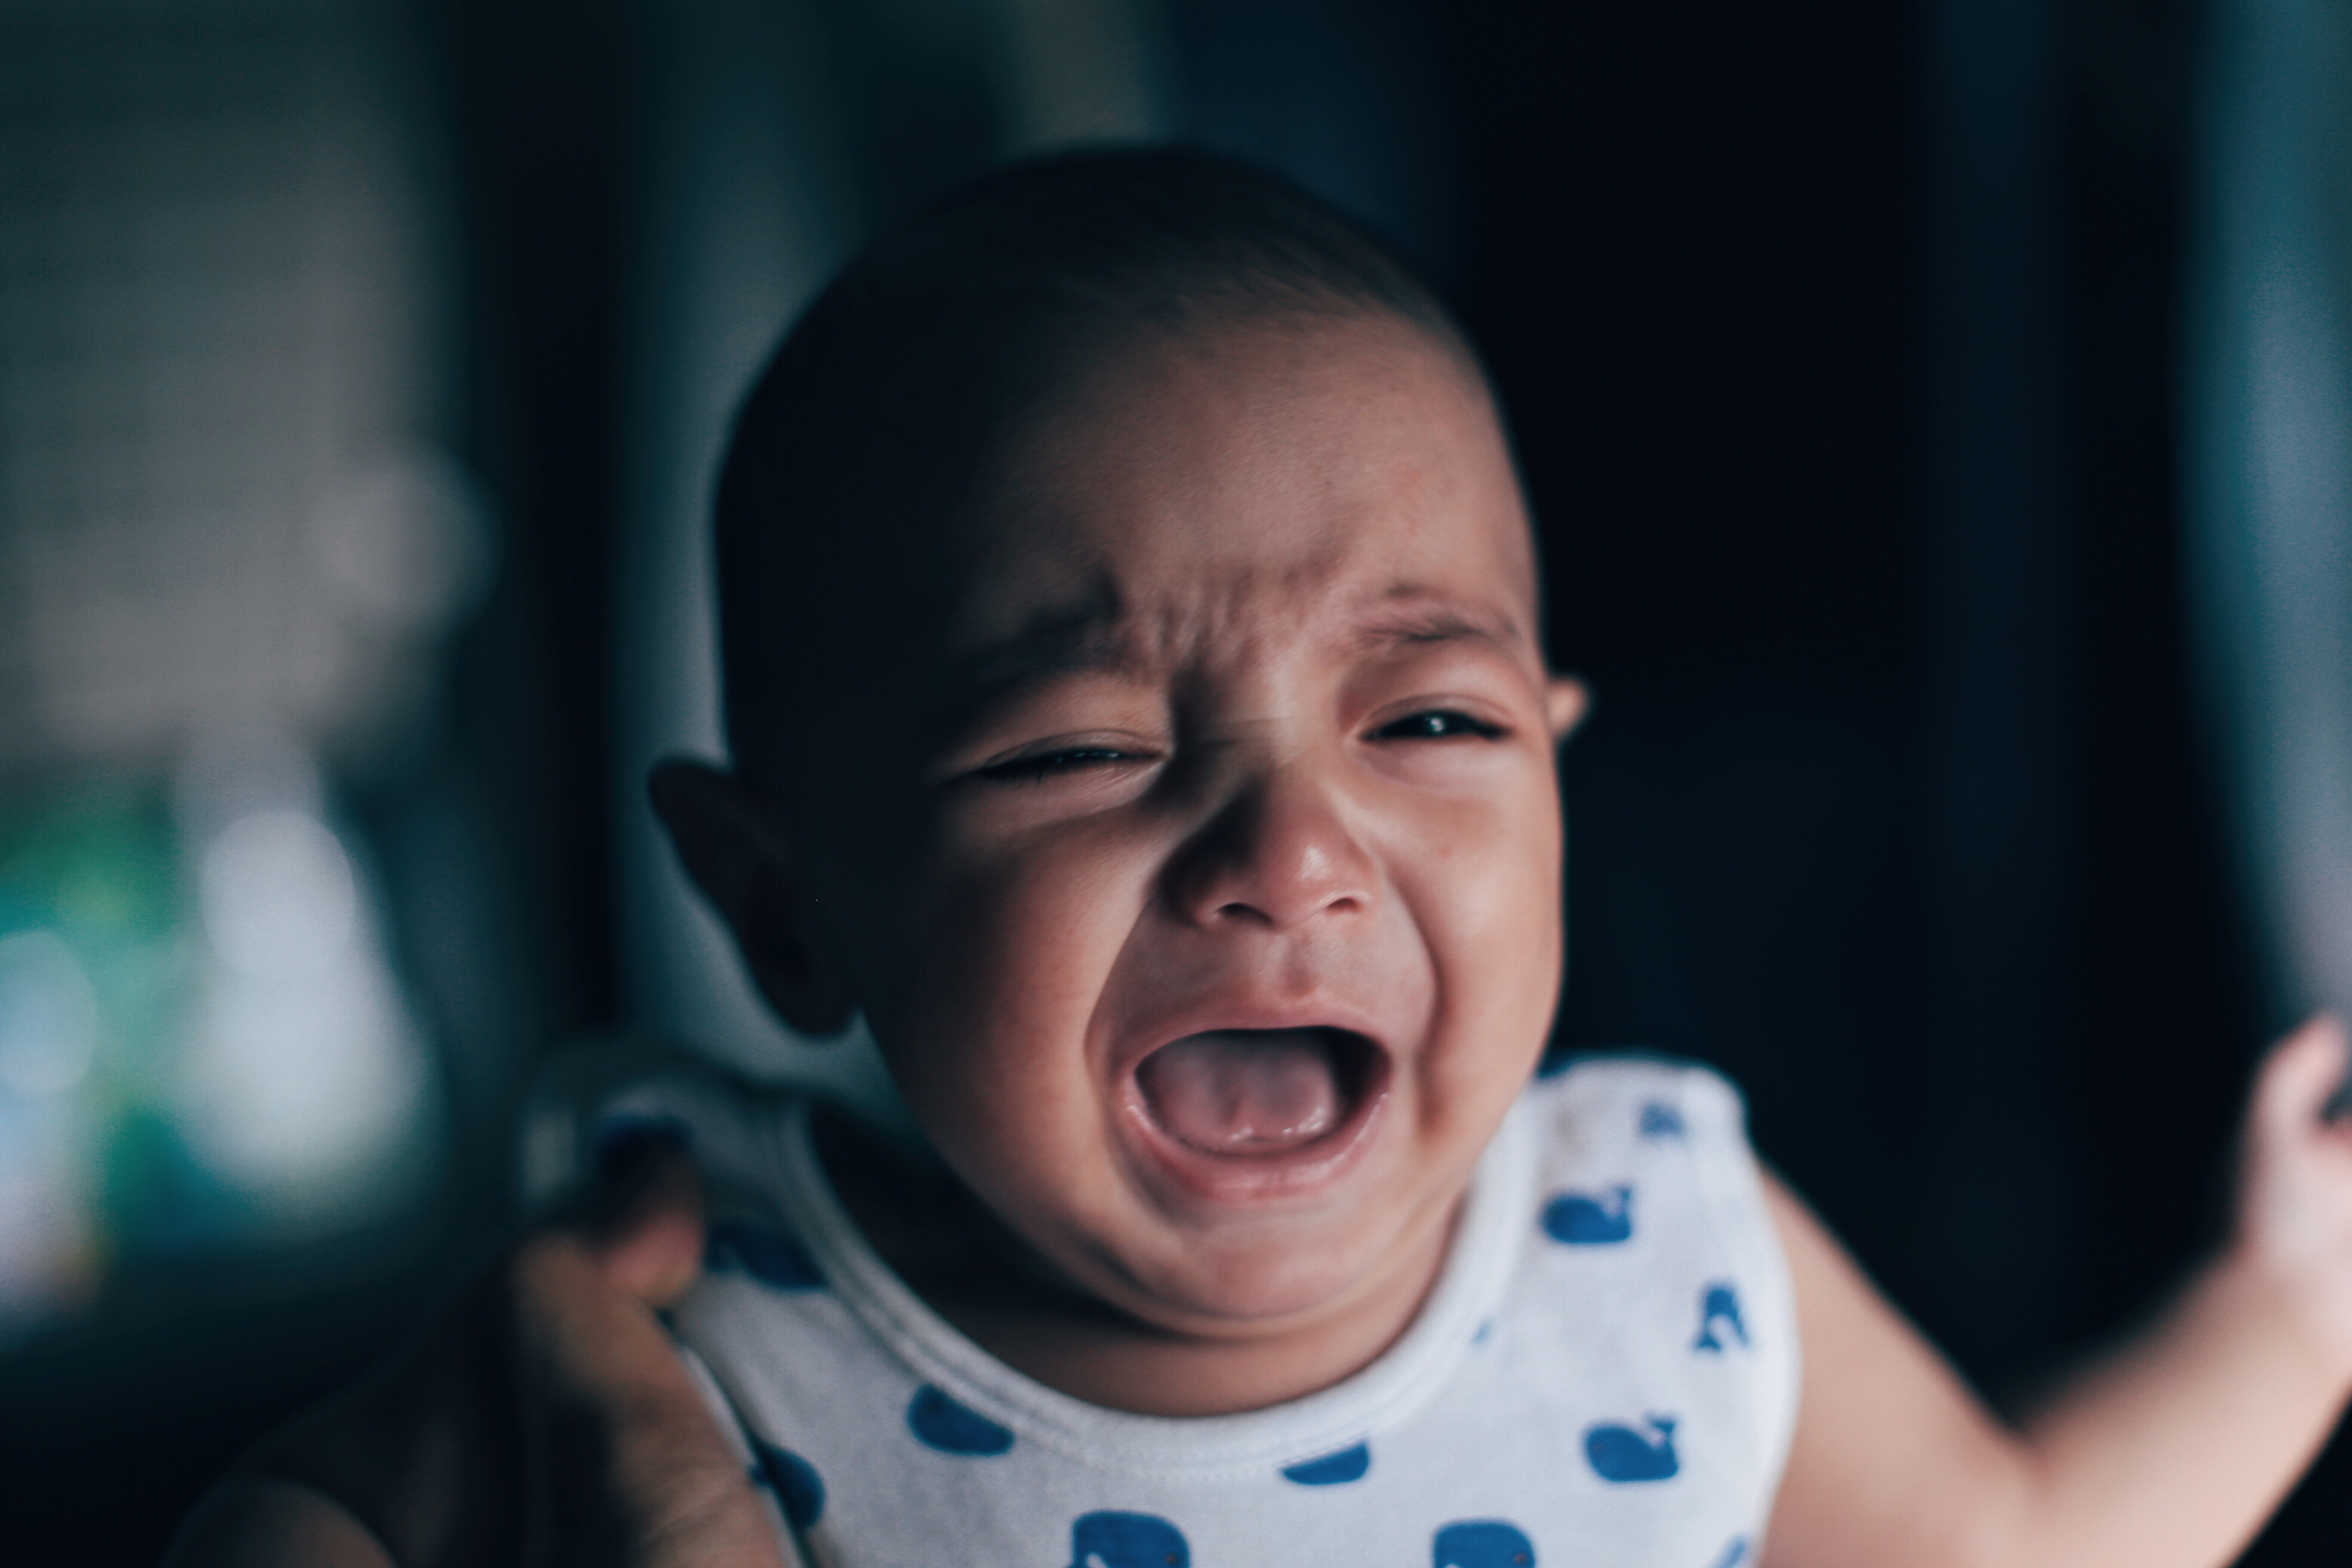 He baby cries. Младенец в гневе. Младенец плачет испуг. Плаксивый ребенок с вегетативными нарушениями. Плачущий малыш бюром.